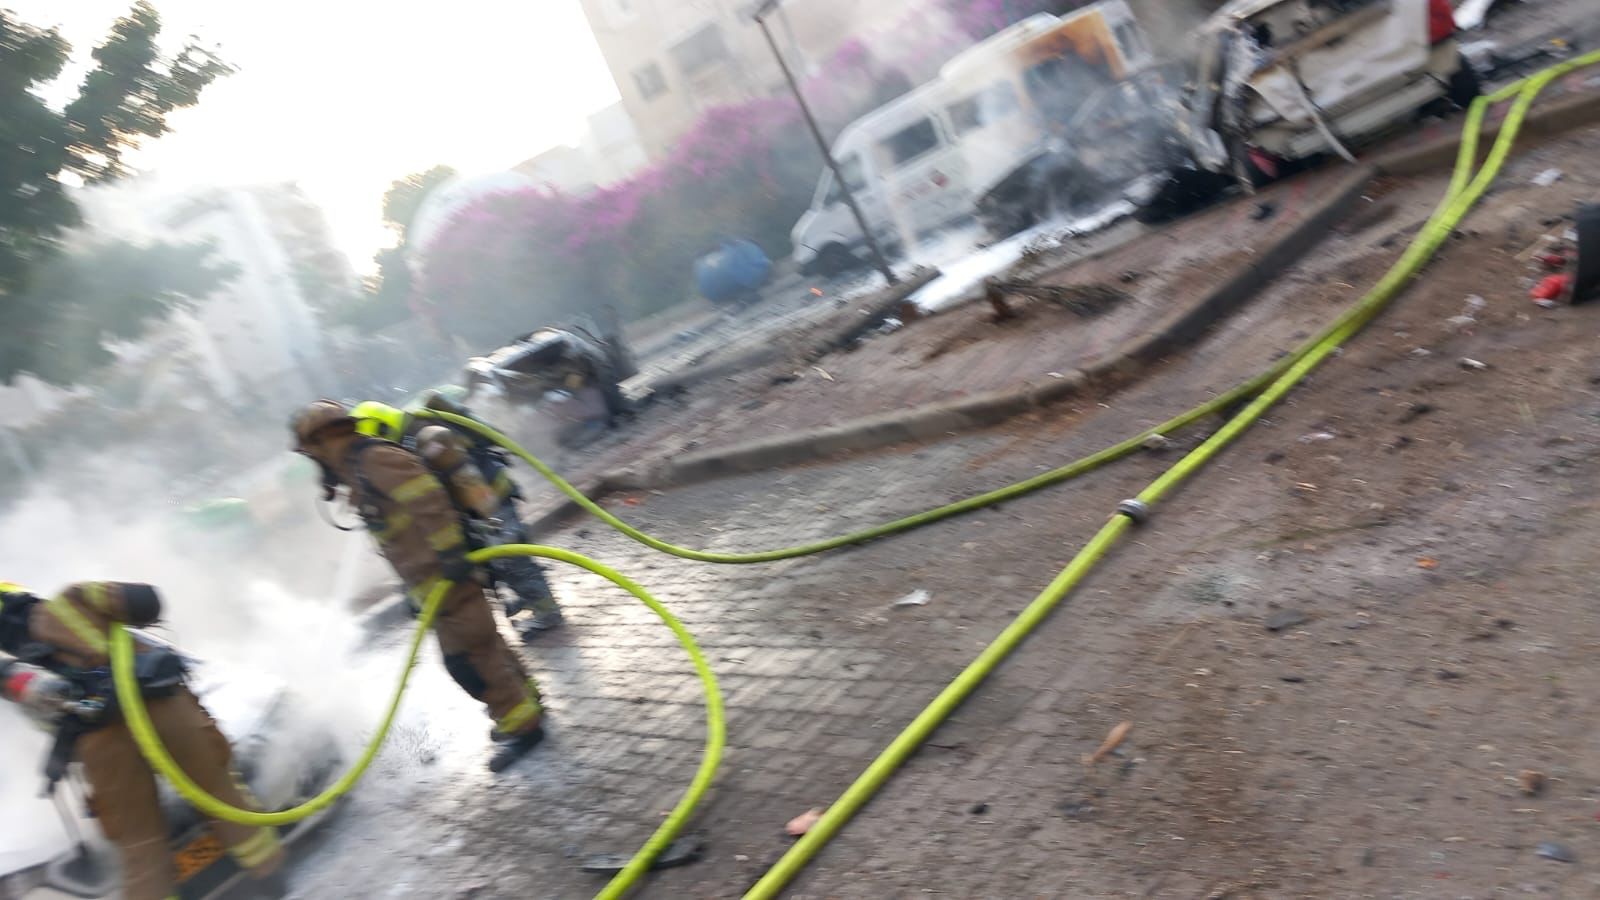 سقوط قذائف في اشدود وغان يفني واضرار في مبان وسيارات.